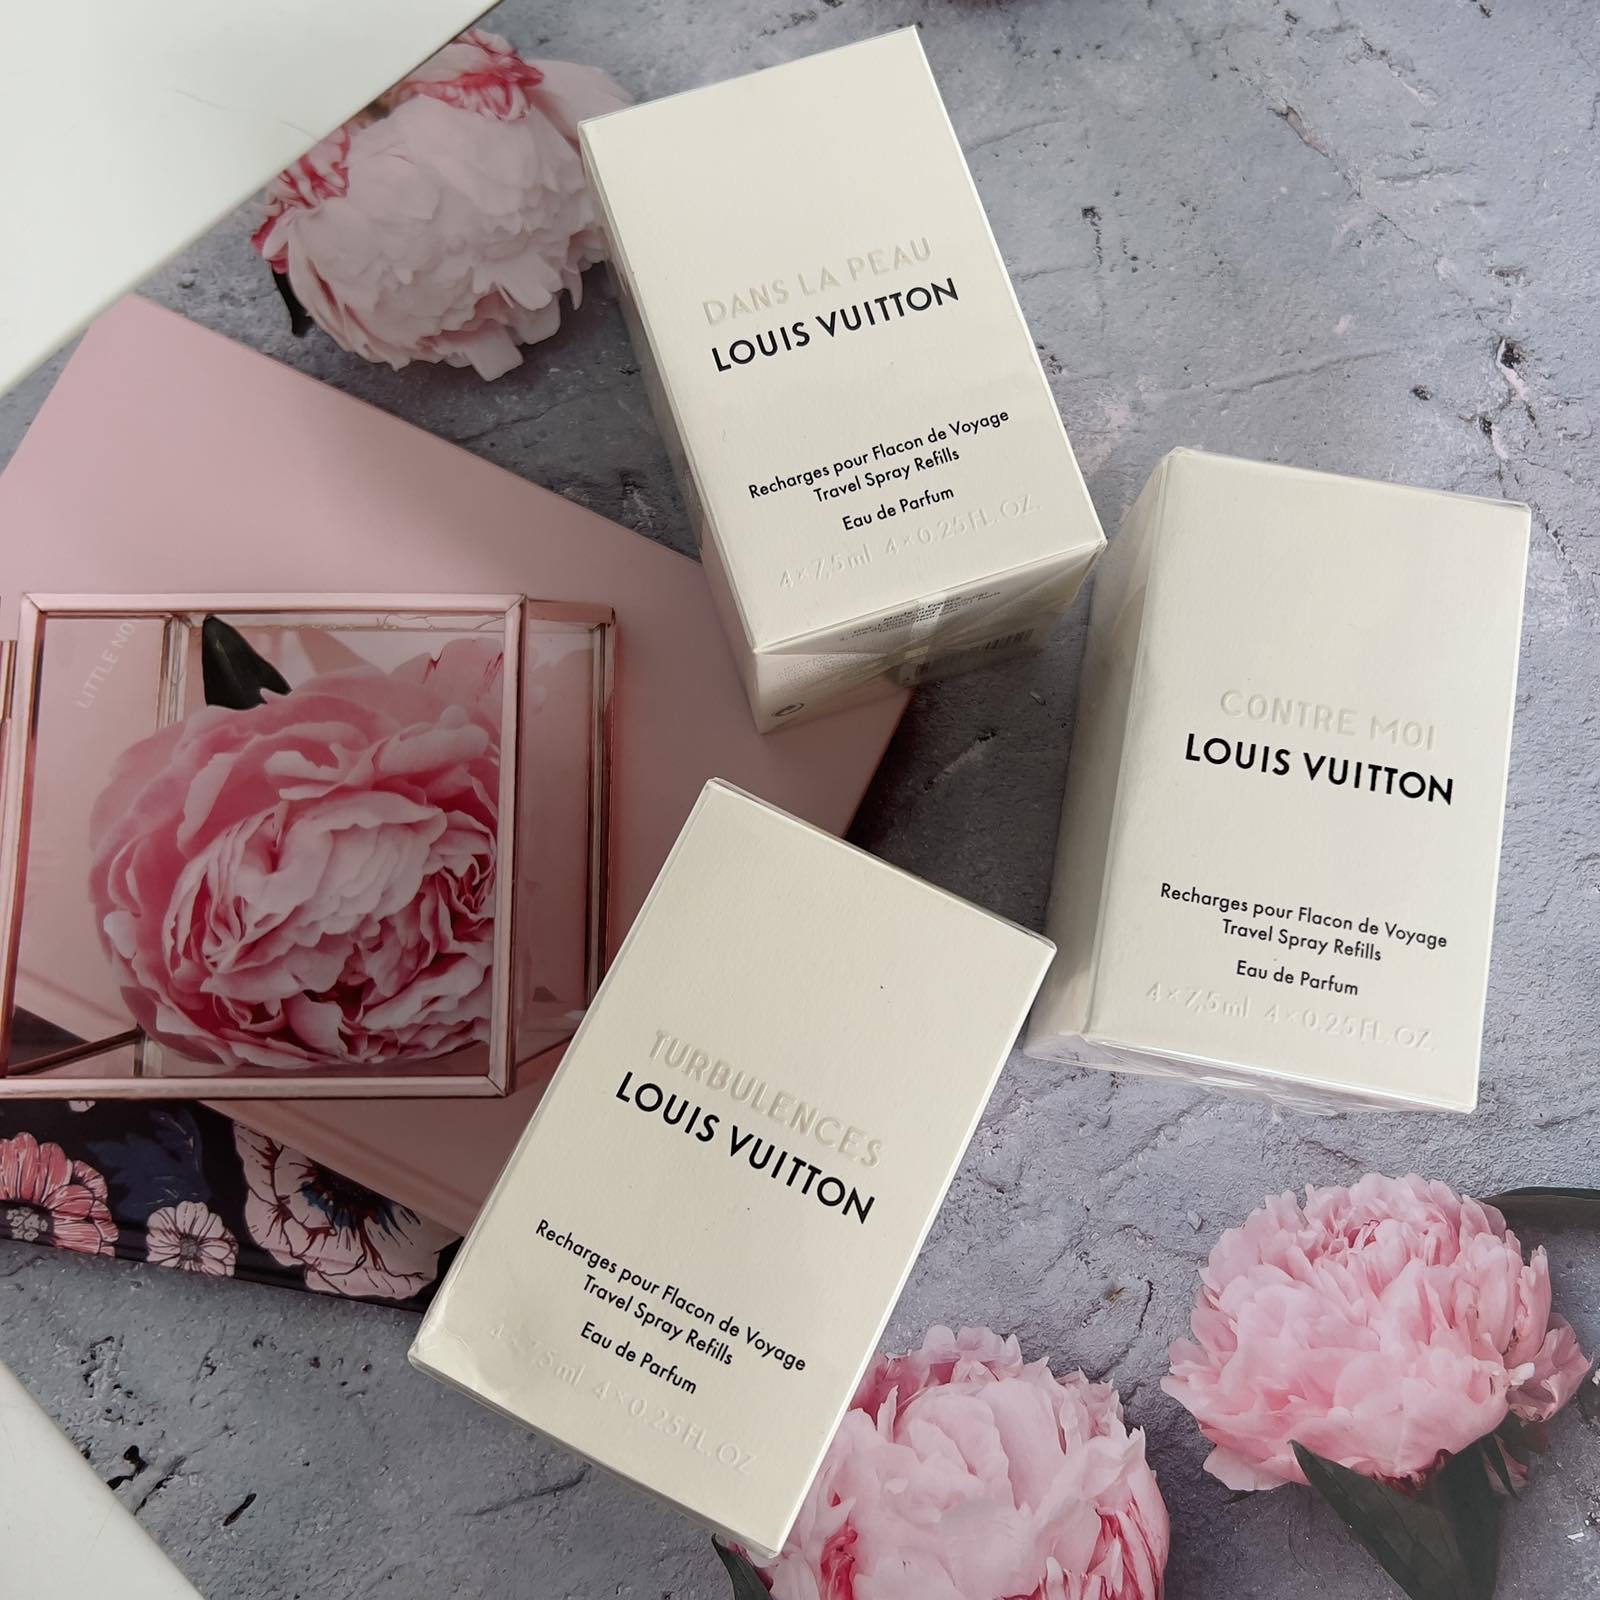 Louis Vuitton Dans La Peau Travel Spray Perfume - Canon E-Bags Prime